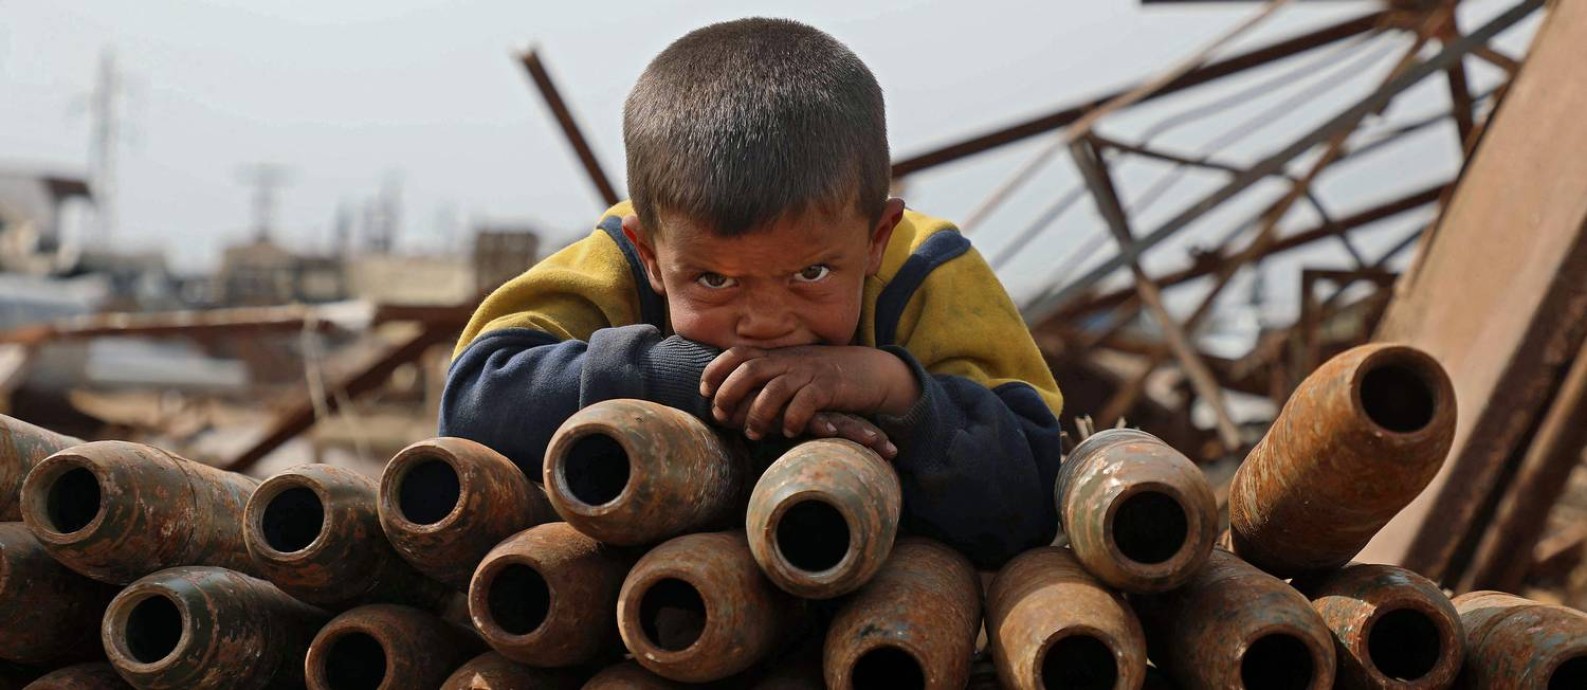 Criança síria posa sobre pilha de projéteis neutralizados em ferro-velho nos arredores de Maaret Misrin, na província de Idlib Foto: AAREF WATAD / AFP/10-03-2021